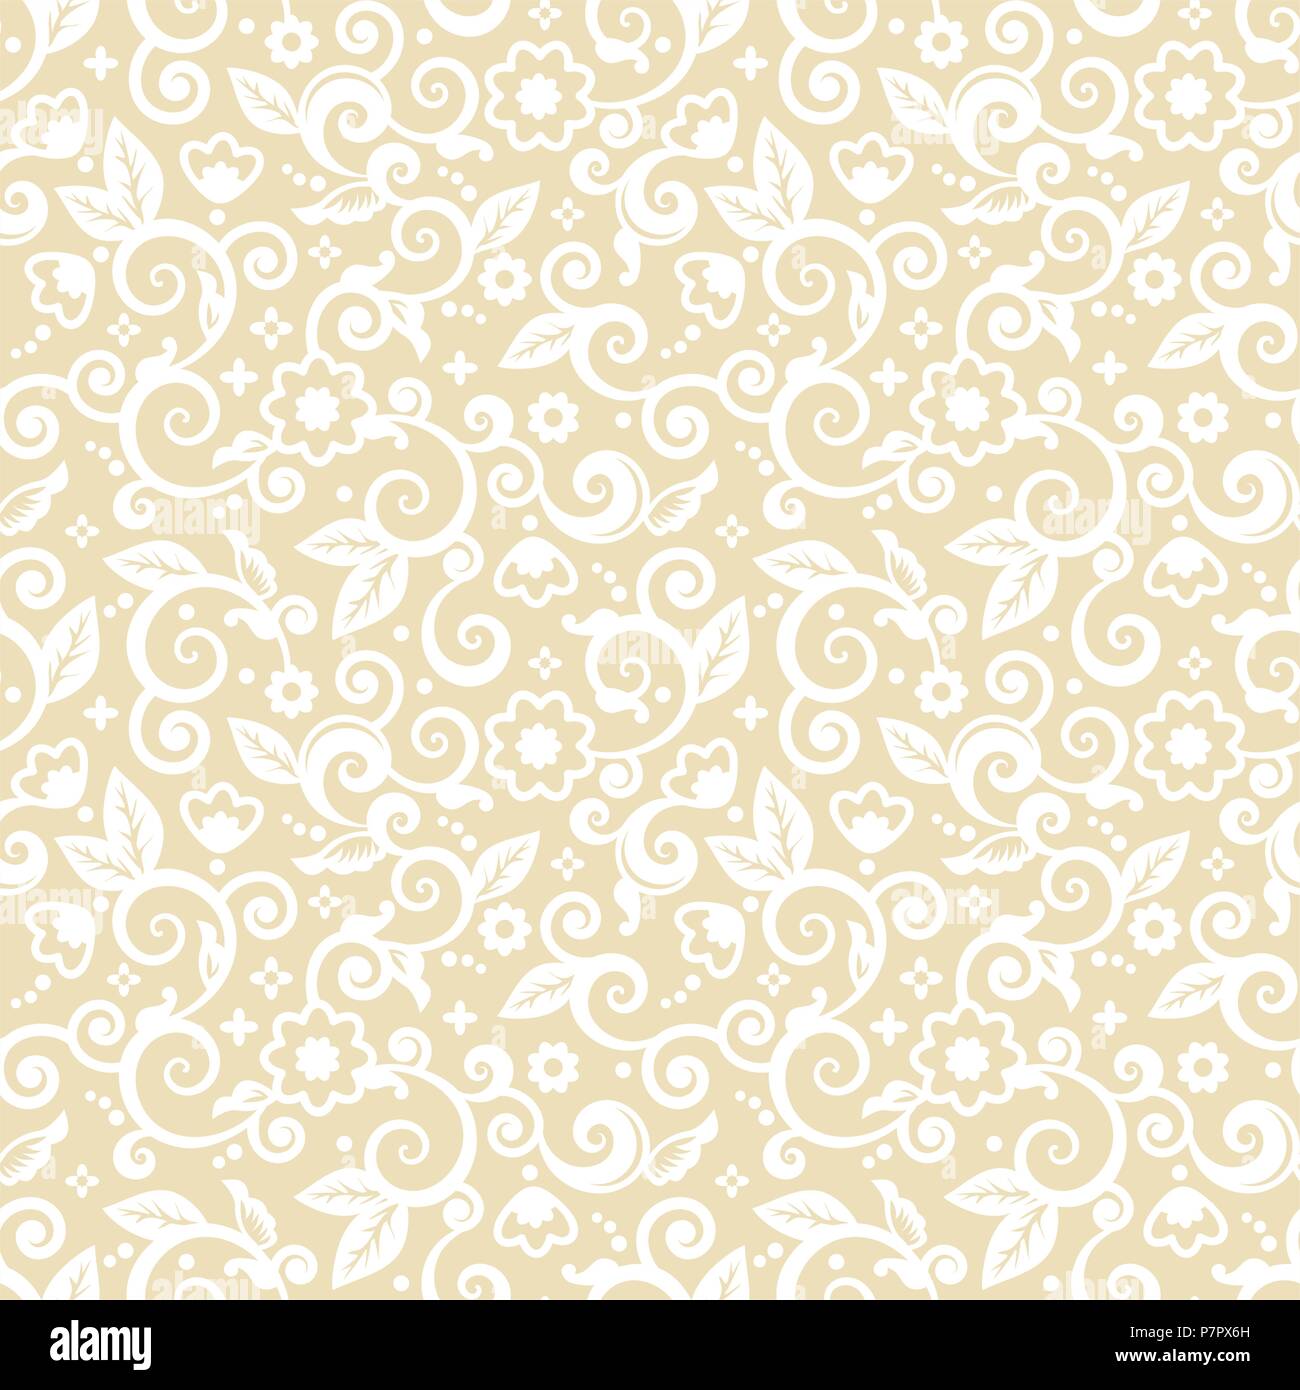 Seamless (vous voyez 4 tuiles) sur blanc élégant motif floral abstrait or pâle, d'impression, papier peint, Swatch, la texture ou l'arrière-plan Illustration de Vecteur